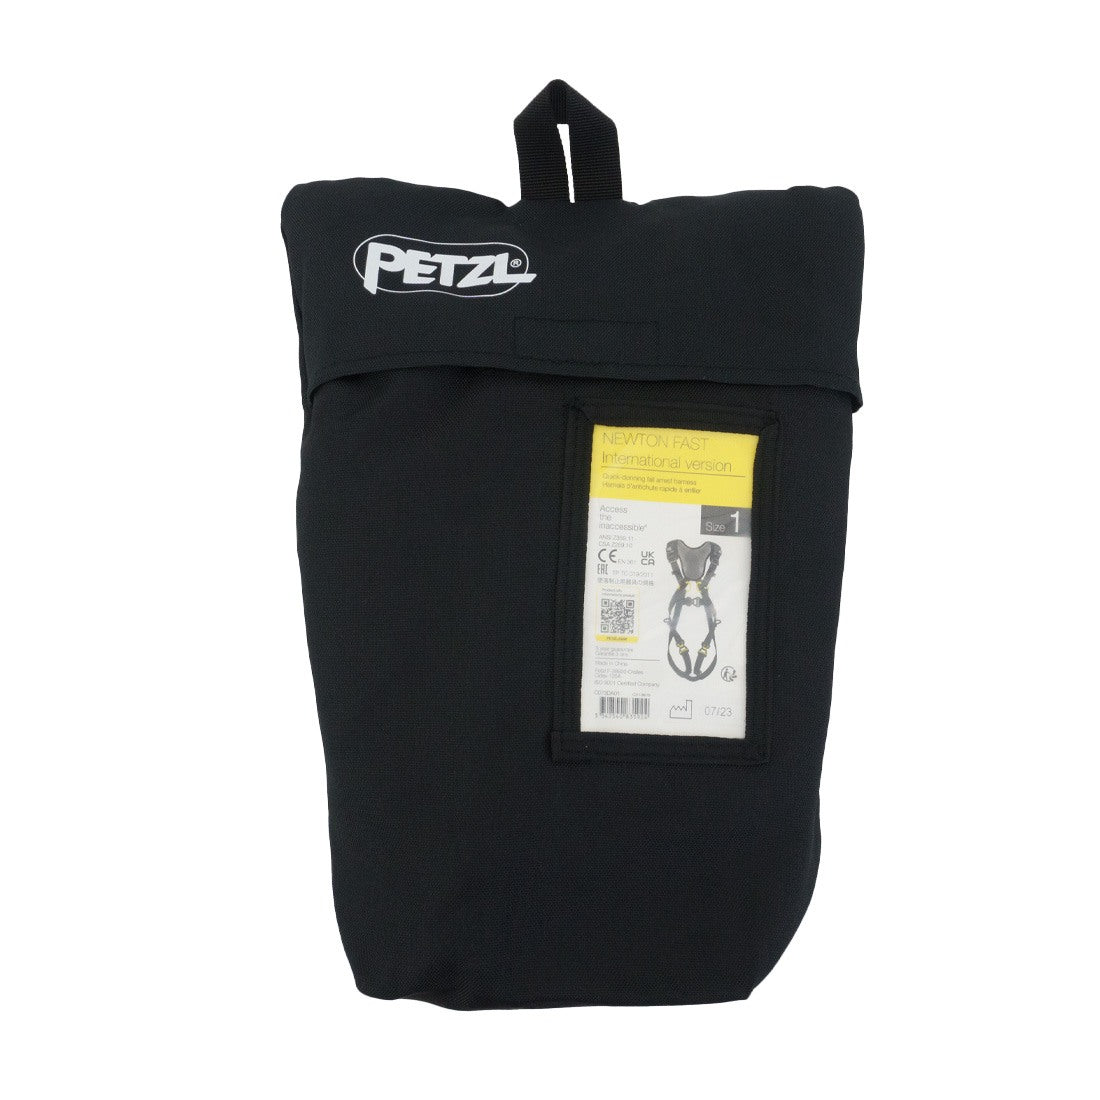 Petzl Newton Fast MEWP Kit Harness Bag View